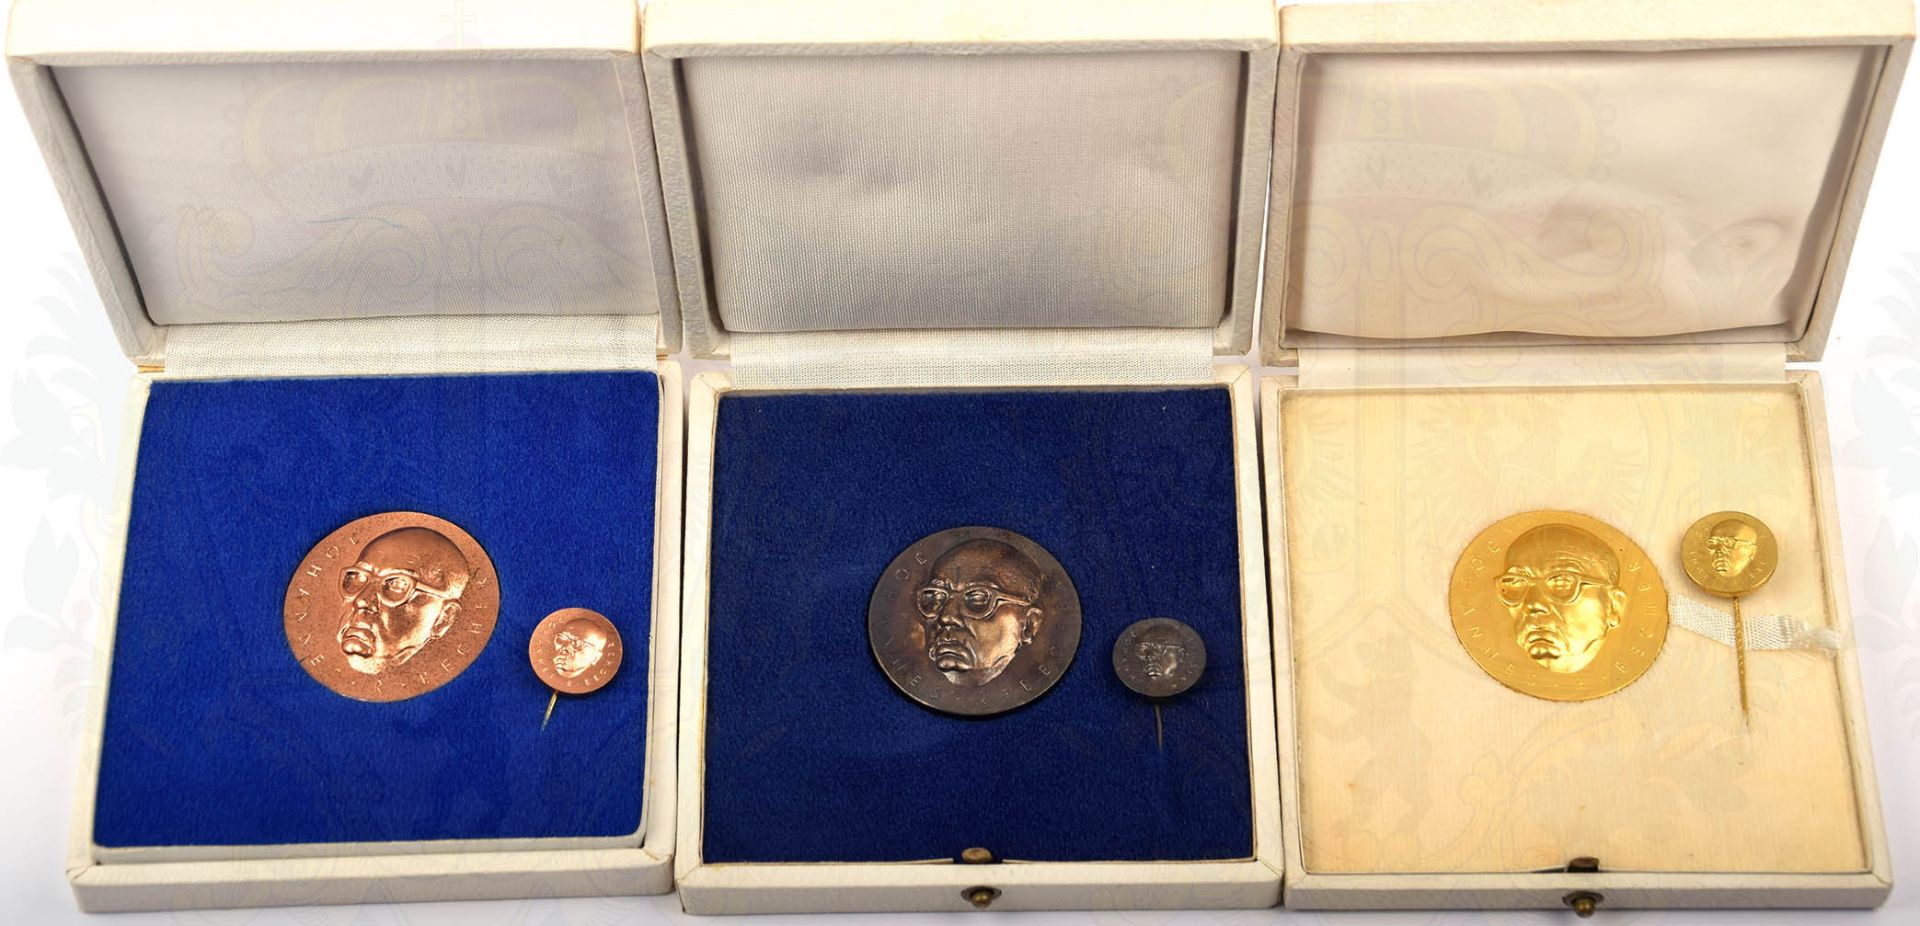 SATZ JOHANNES R. BECHER-MEDAILLE, Stufen in Bronze/Silber/Gold, Buntmetall, mit entspr. Miniatur, im